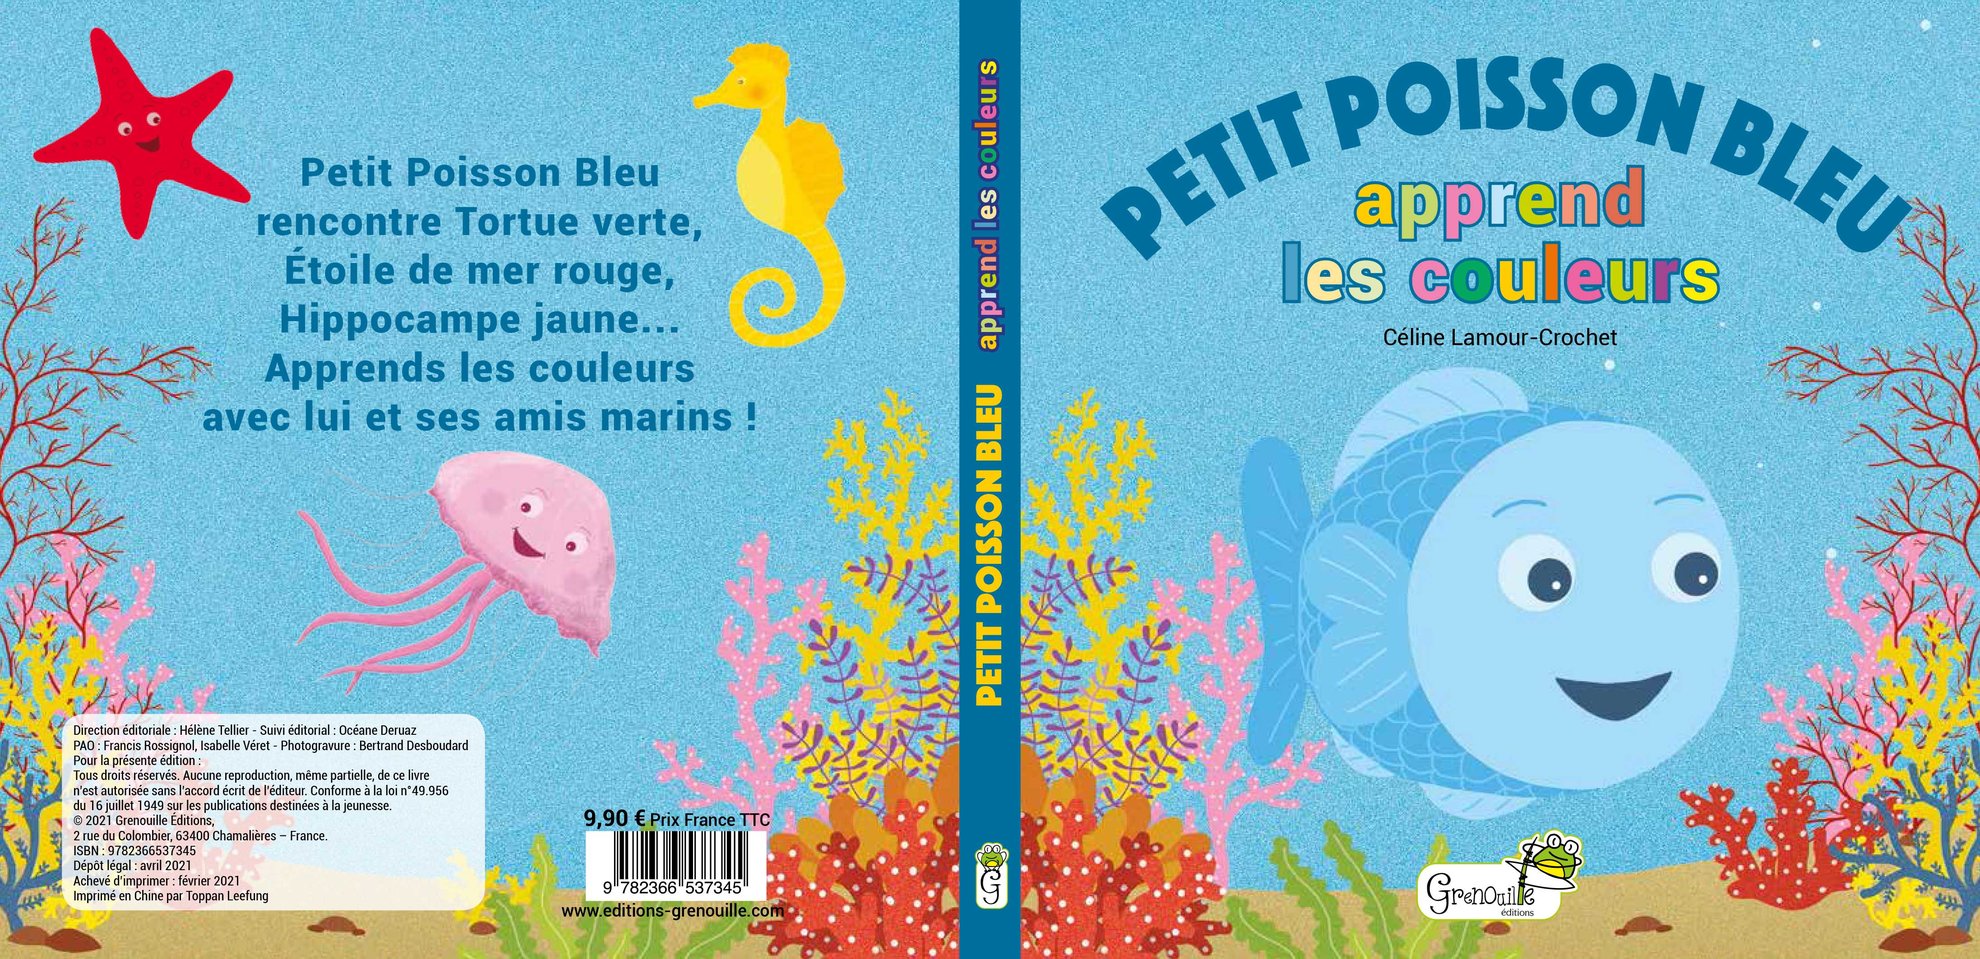 Petit poisson bleu apprend à compter, Grenouille éditions, mai 2021